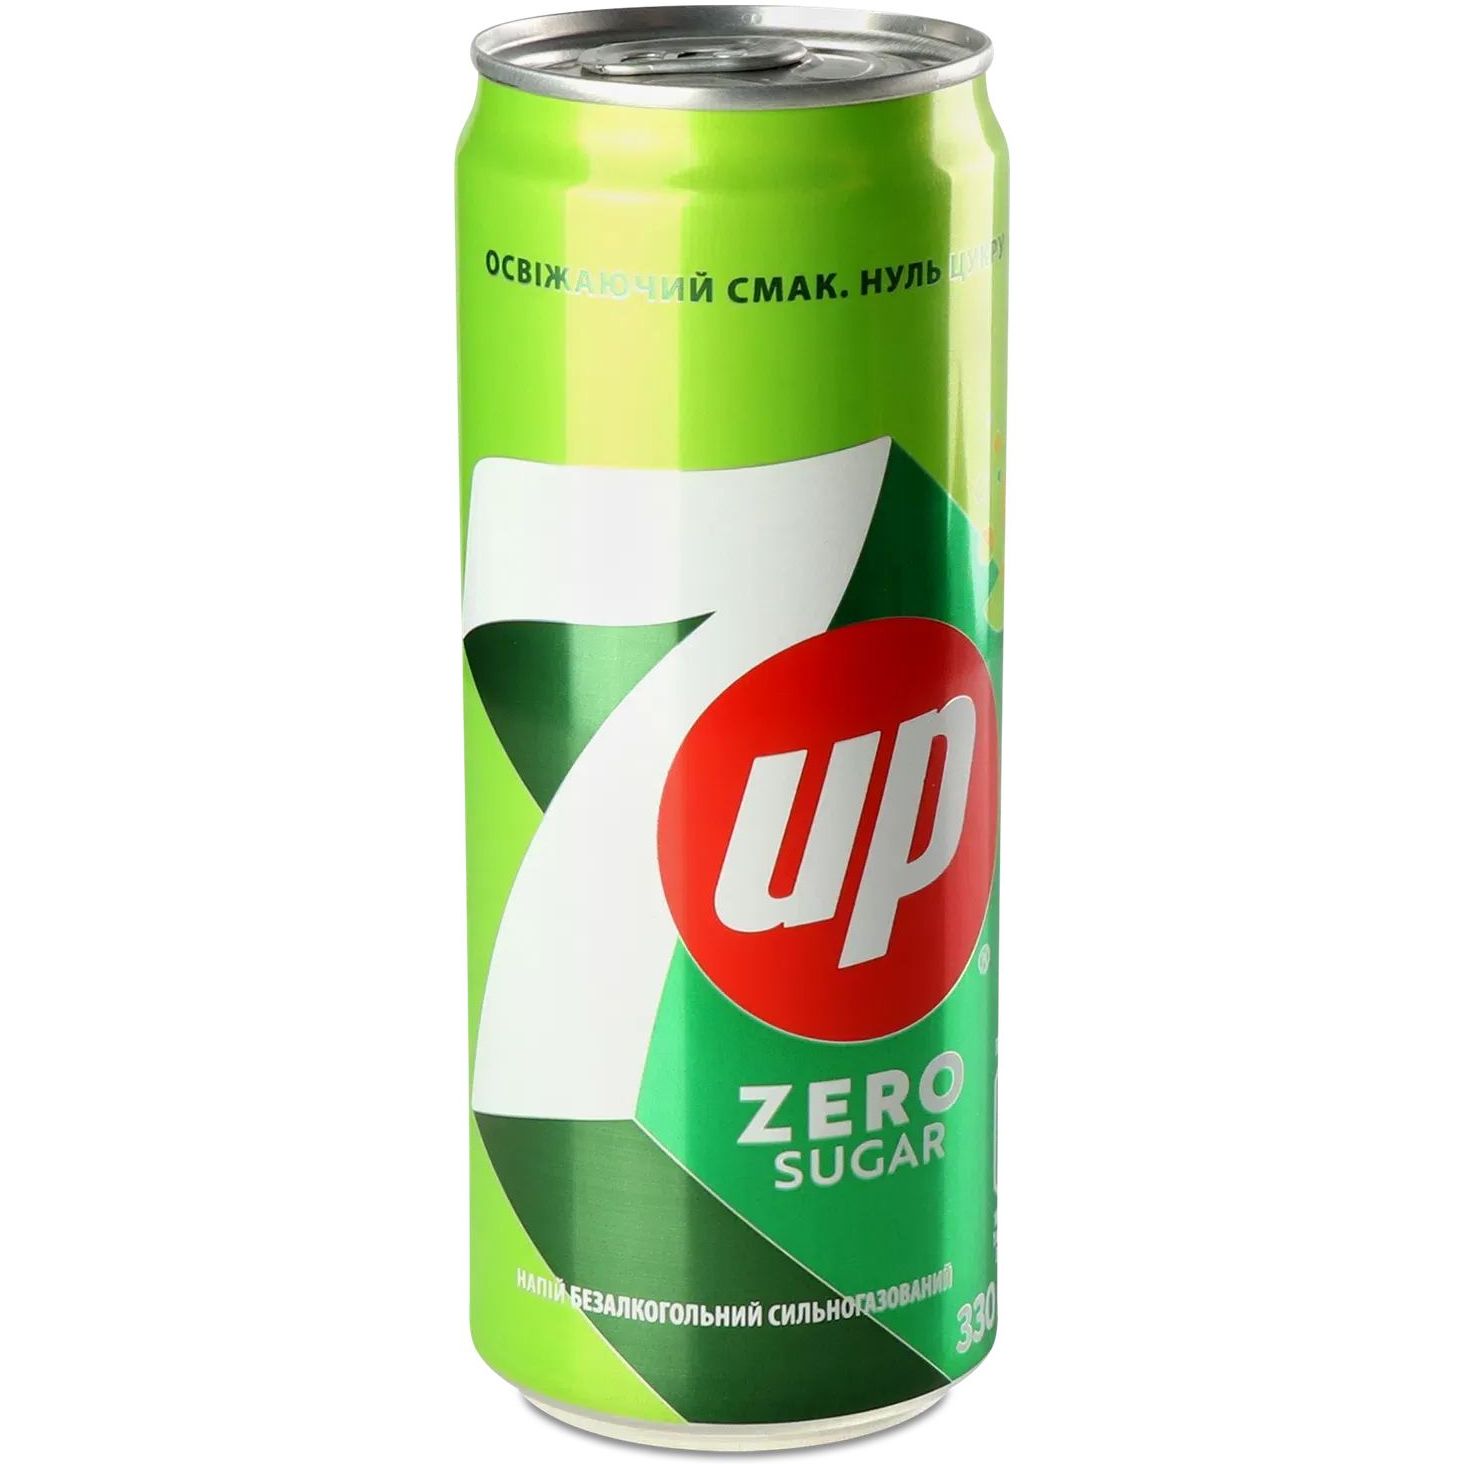 Напиток безалкогольный 7up Zero Sugar сильногазированный 0.33 л ж/б (936775) - фото 1